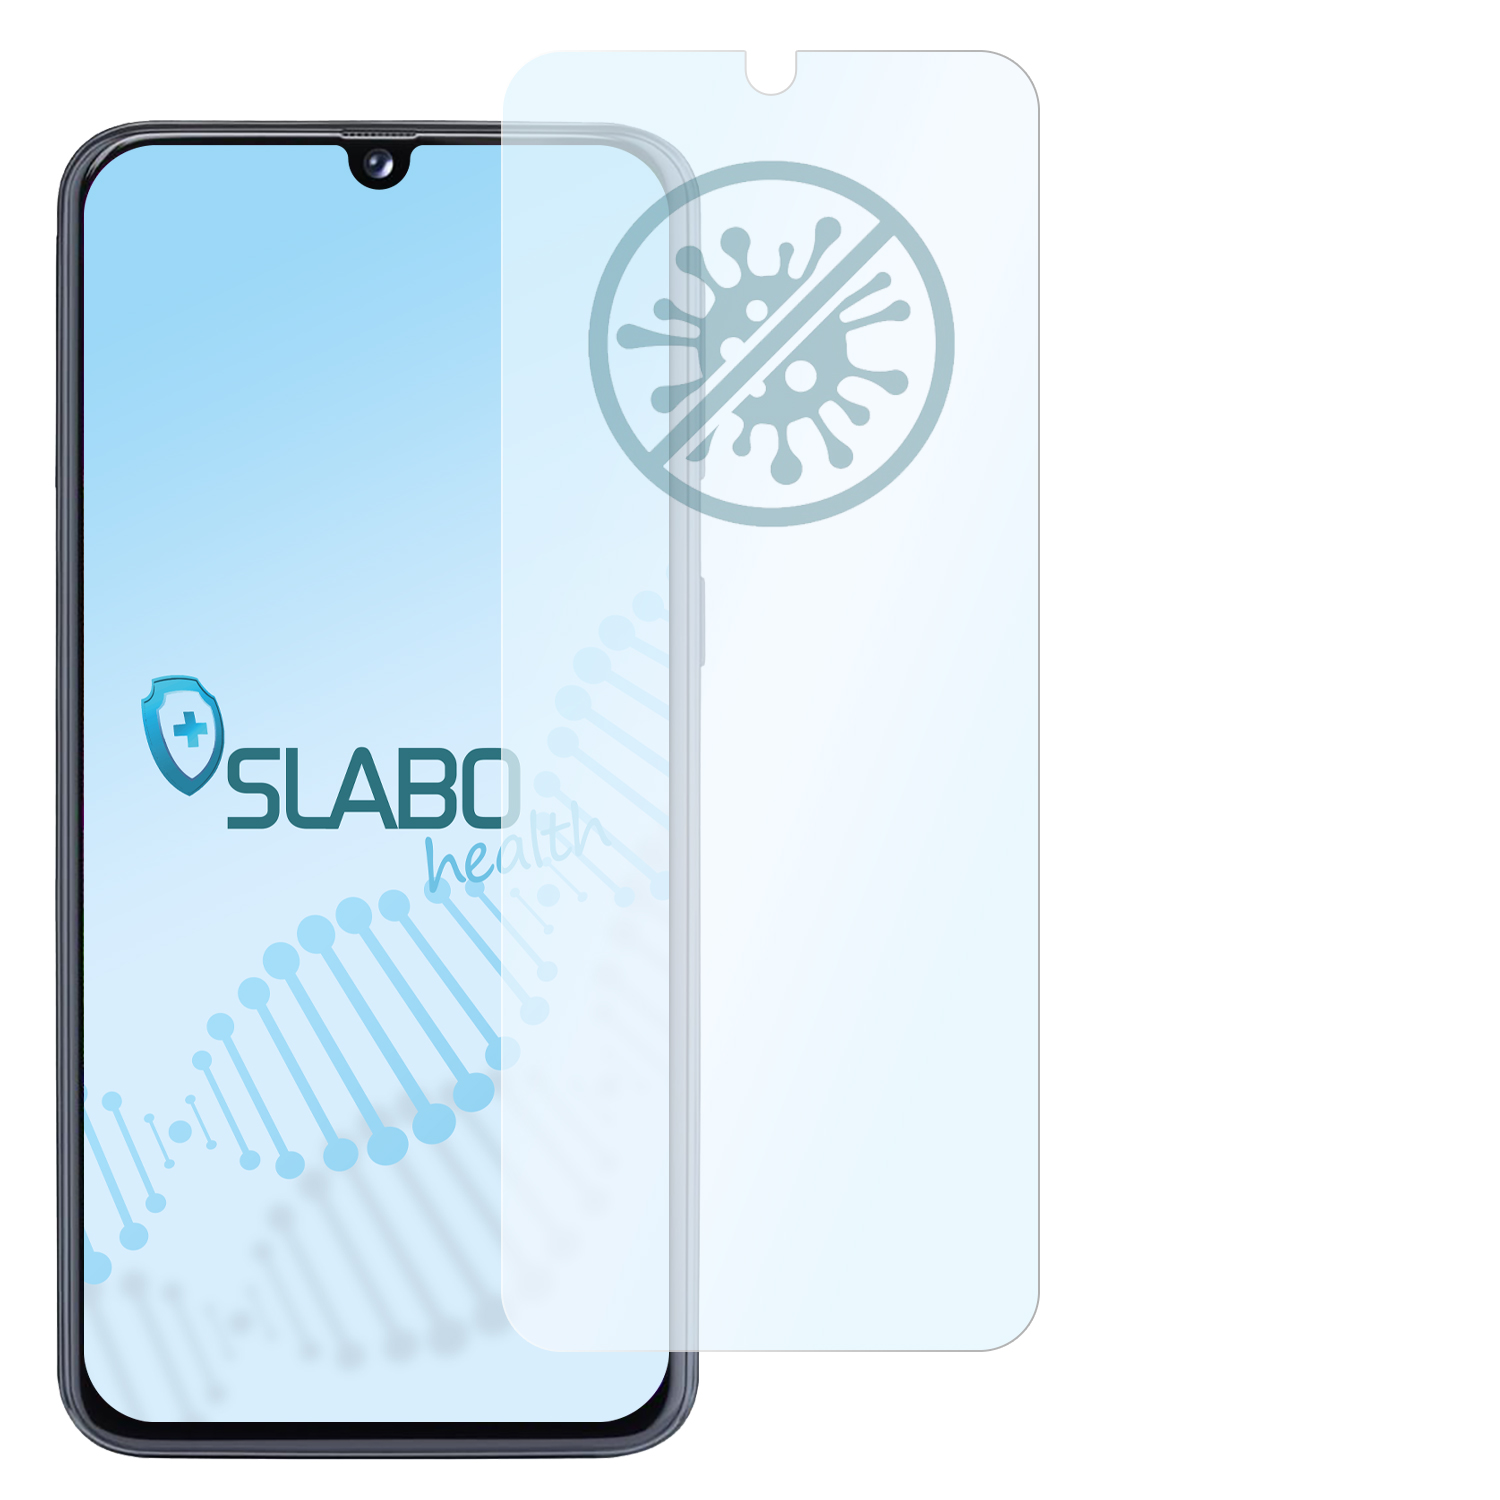 SLABO antibakterielle flexible Hybridglasfolie Displayschutz(für A40) Galaxy Samsung